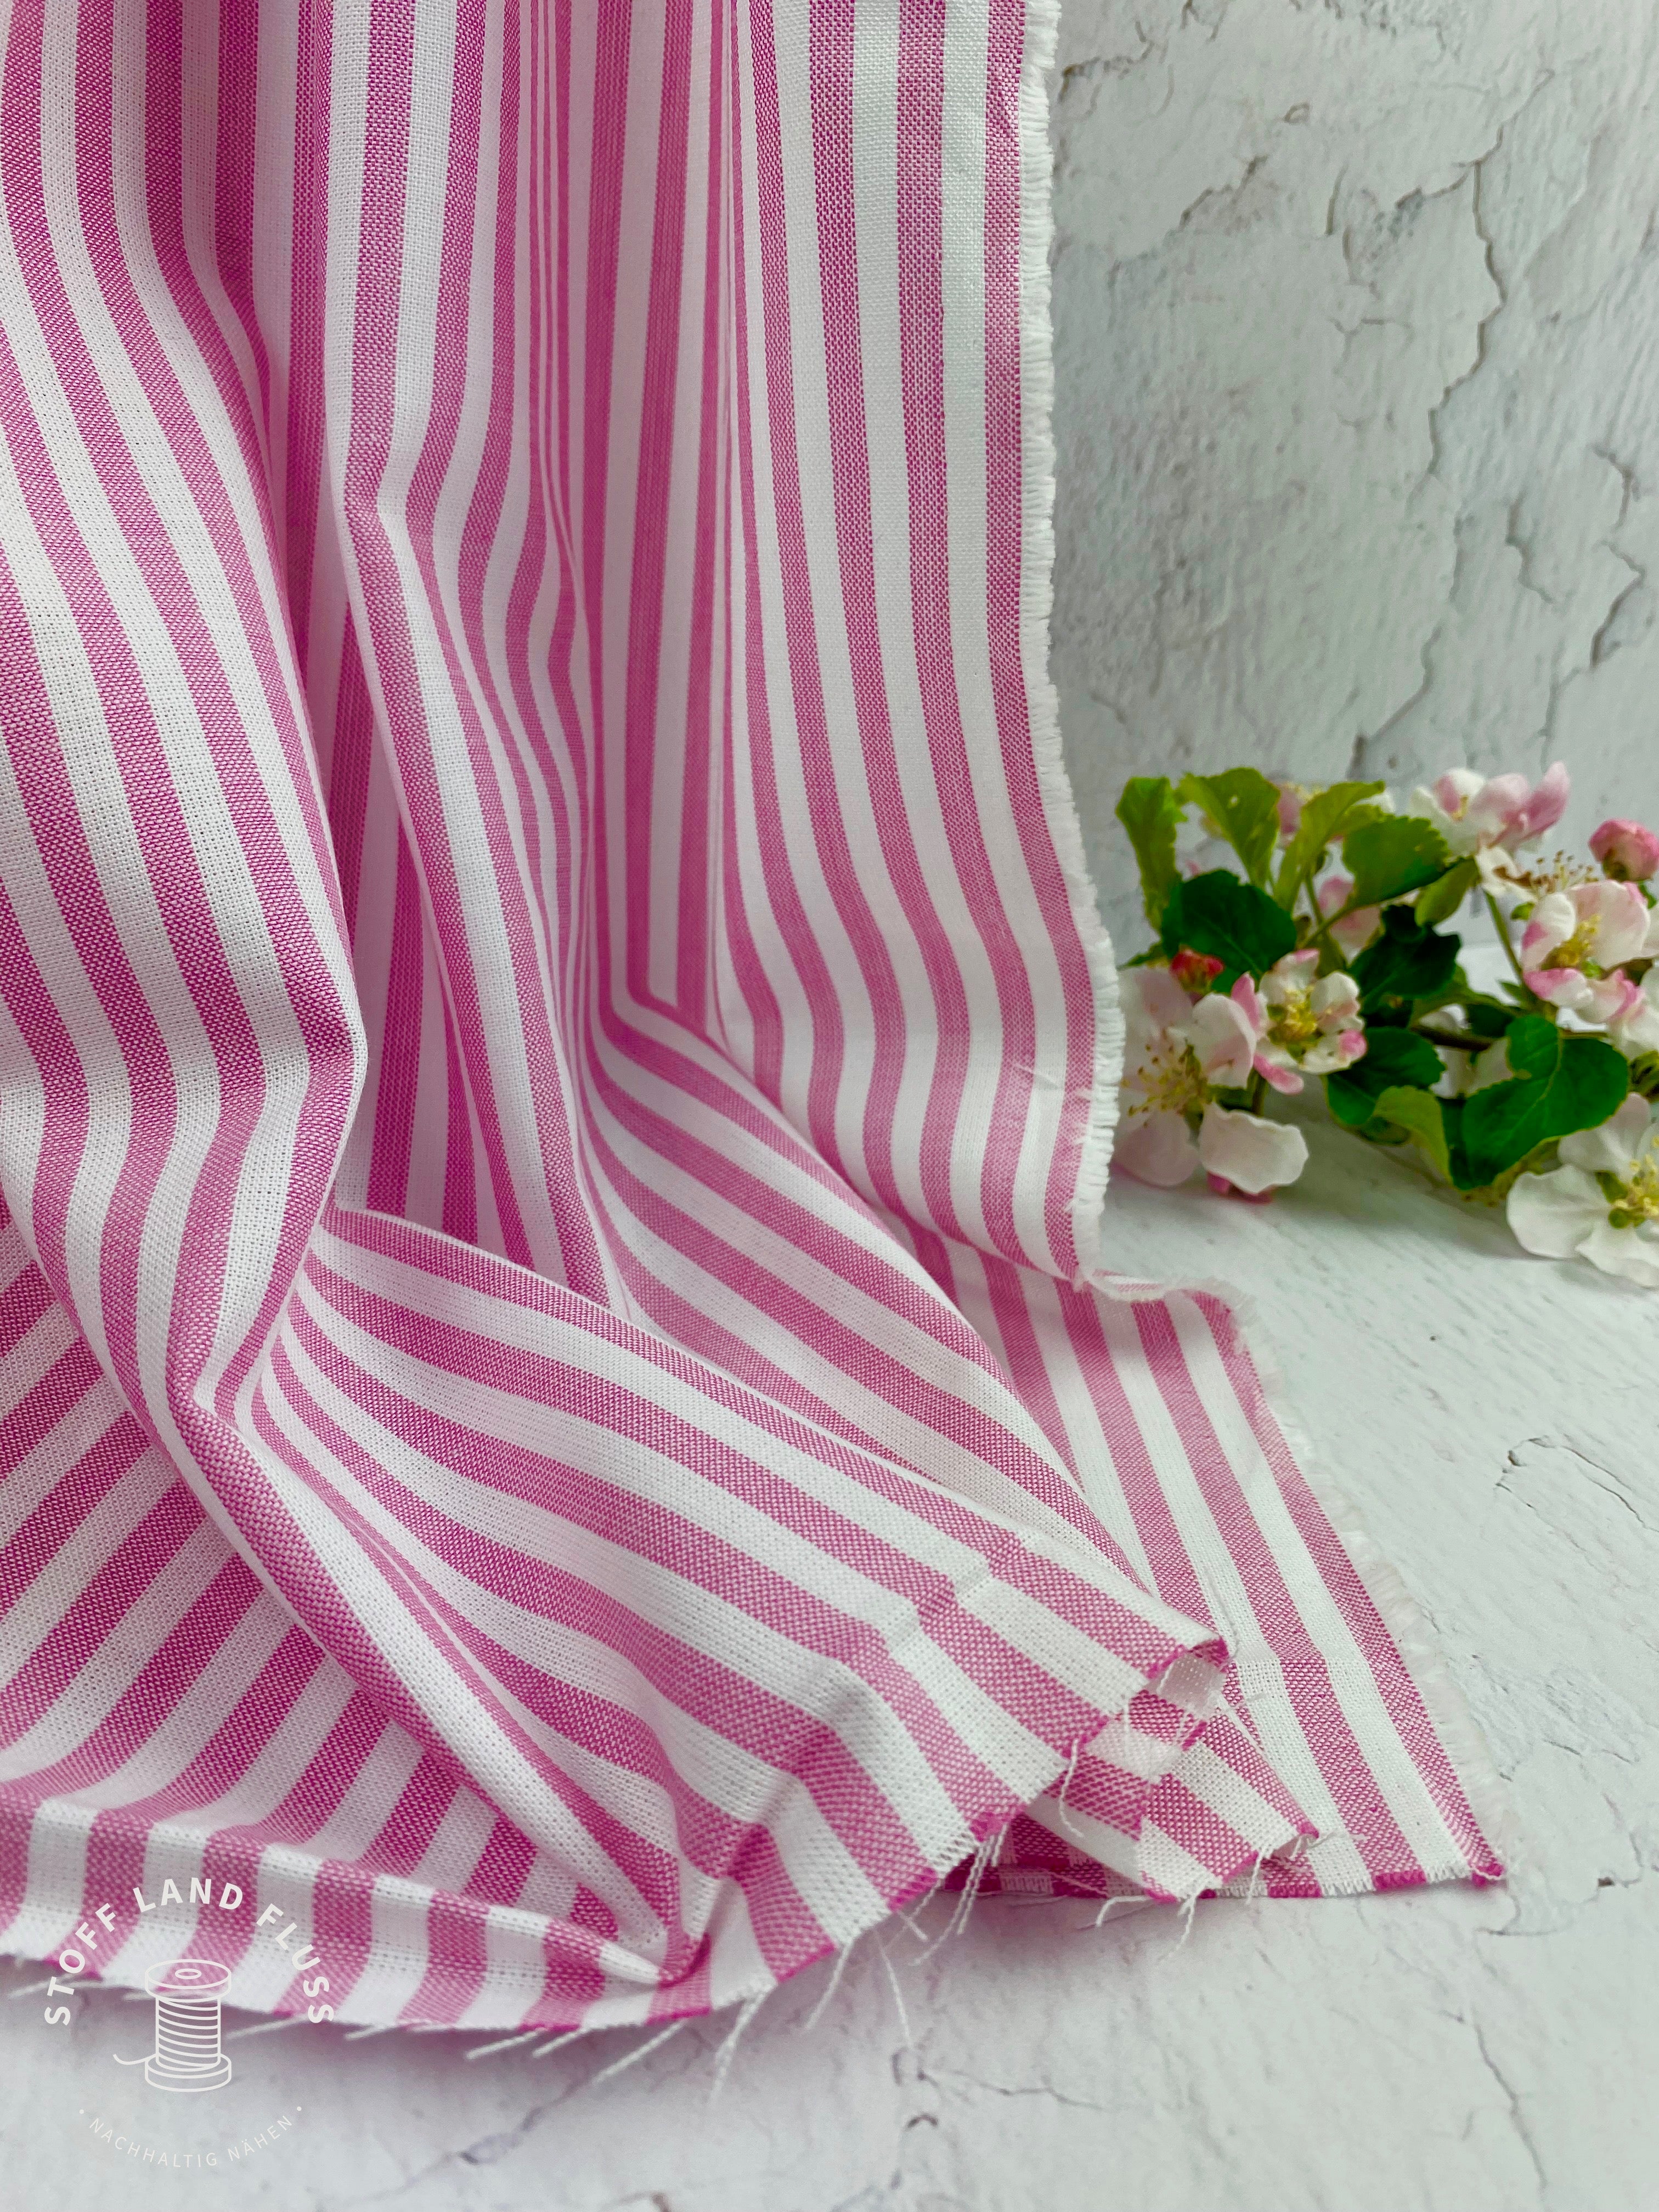 Du ist ein Biostoff bzw. eine Bio Popeline aus 100 % zertifizierte Bio Baumwolle (kbA), pink und weiße Streifen (je 6 mm). Der Stoff fällt zart und leicht. Du kannst daraus Röcke, Oberteile, Blusen und Kleider nähen. Fair und nachhaltig in Europa produziert. 